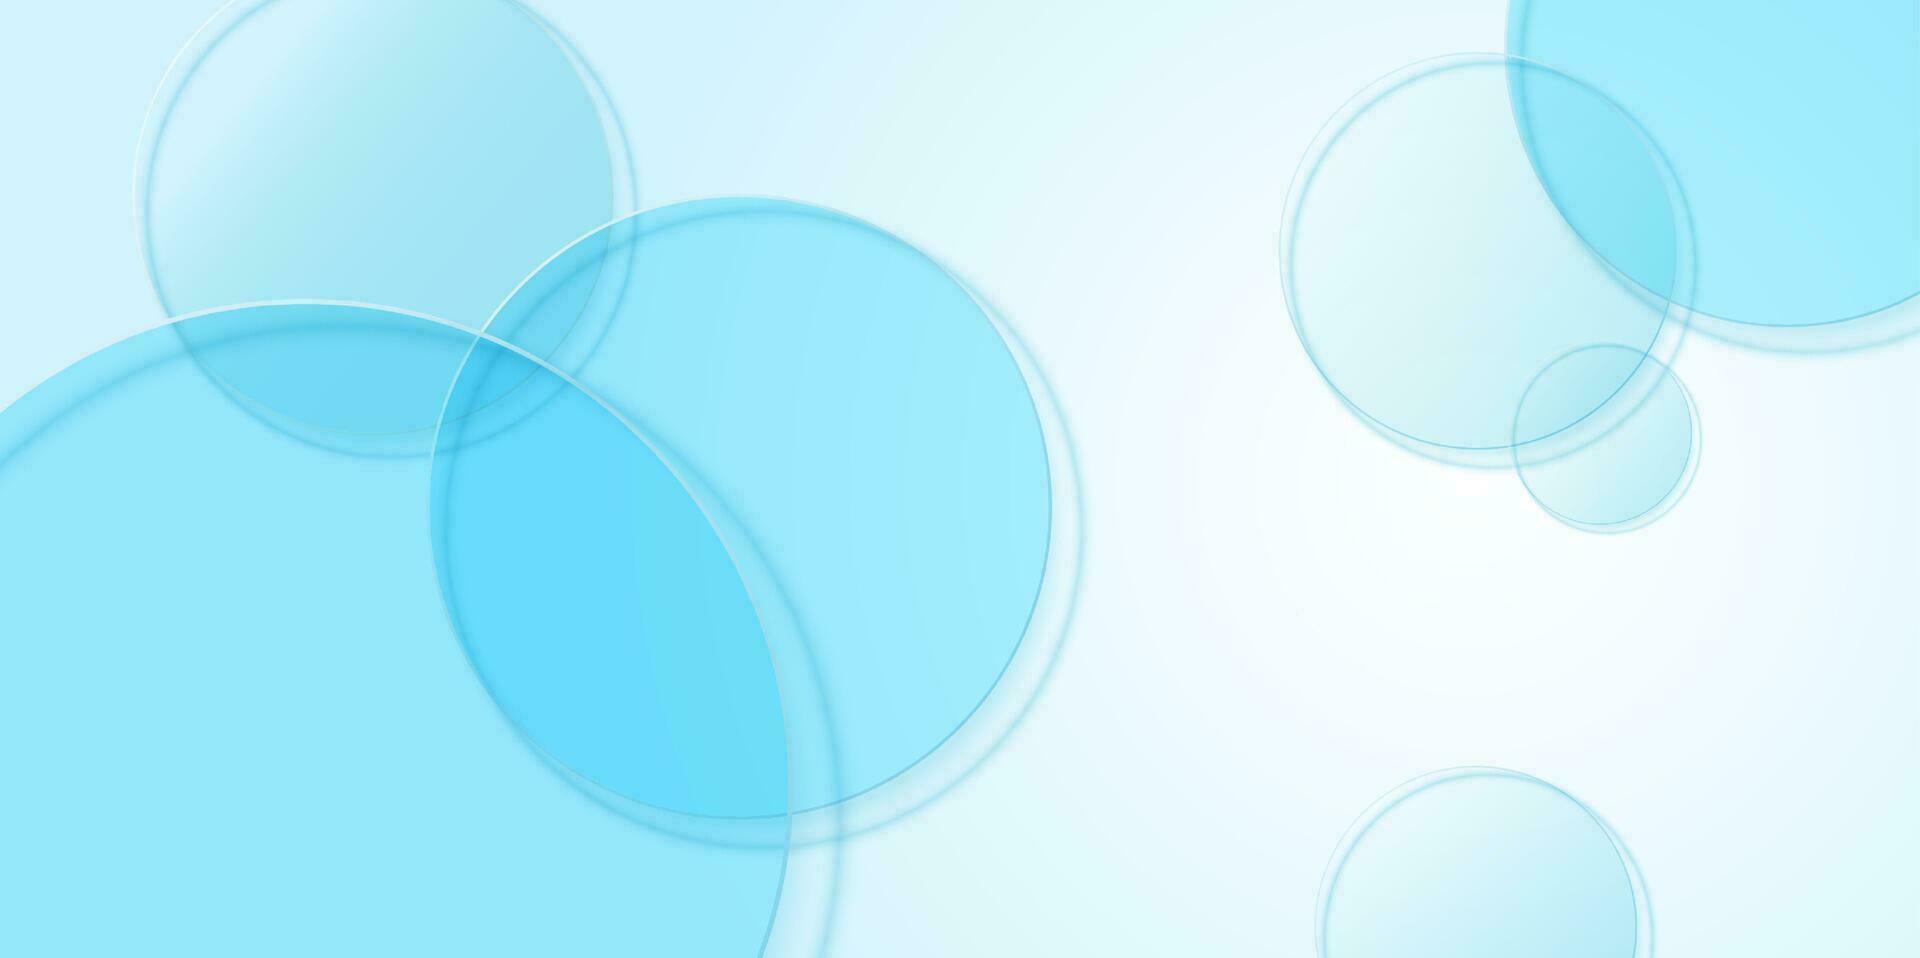 kunstmatig Product Scherm achtergrond met blauw glas in top visie. ontwerp van circulaire glas schijven voor verpakking presentatie. vector ontwerp.